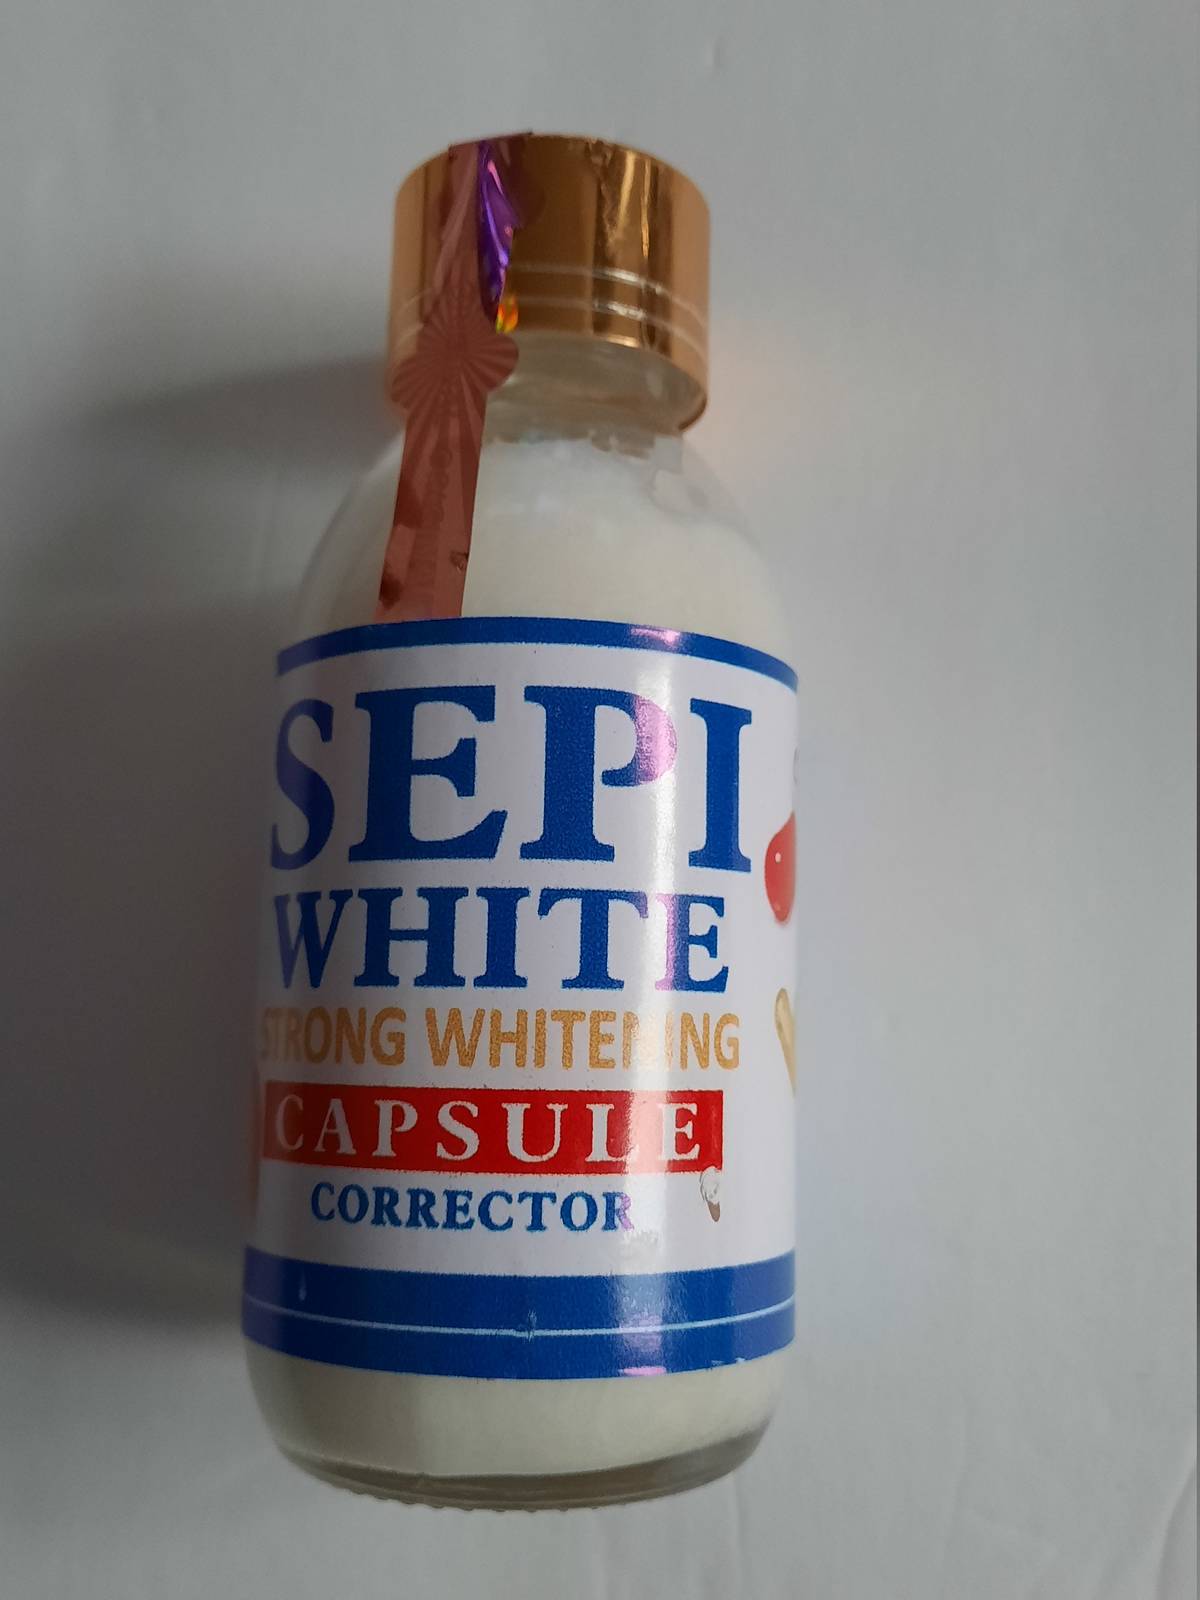 Sepi white strong whitening  capsule corrector